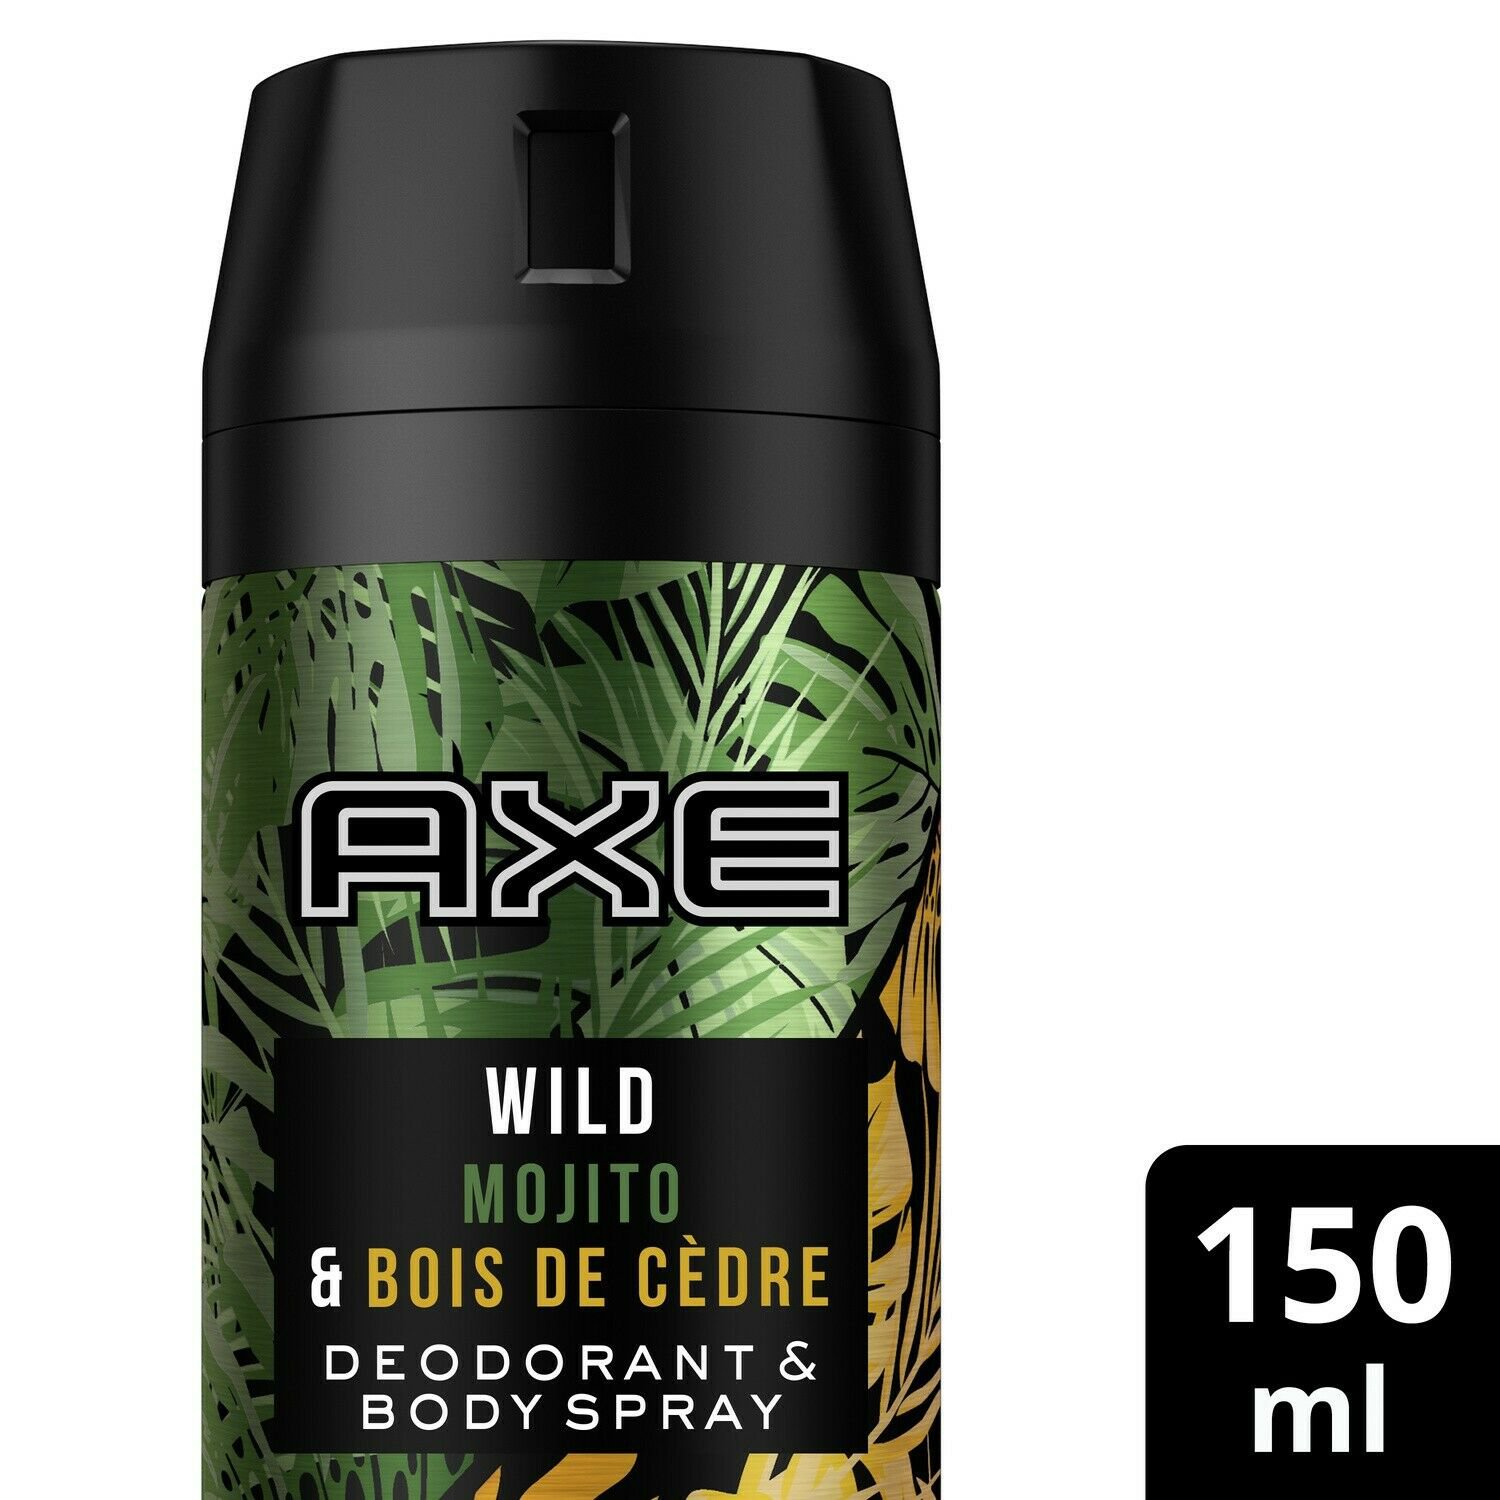 lot 3 wild AX deodorant 150 ml